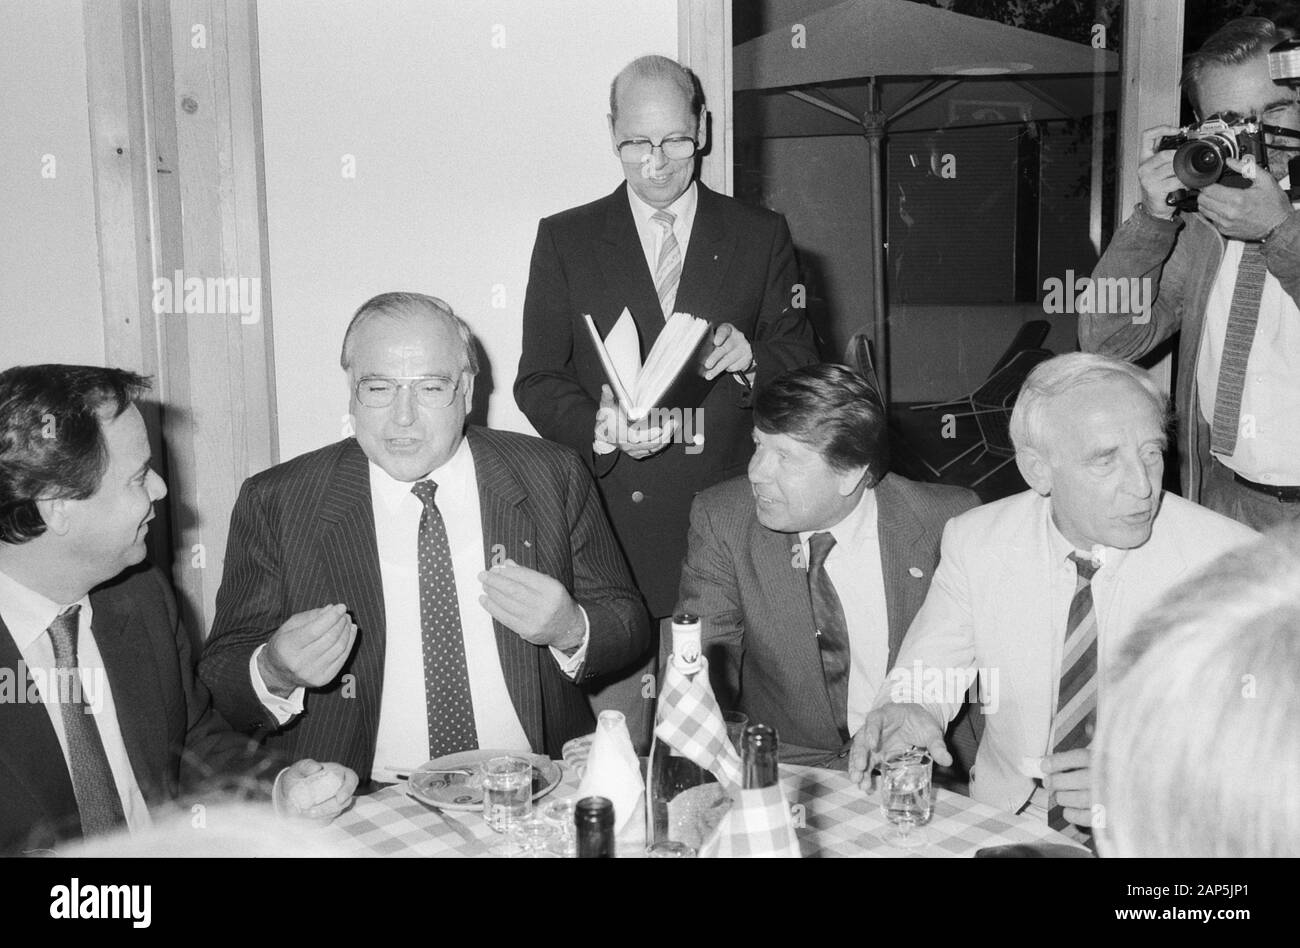 Helmut Kohl, deutscher Bundeskanzler (Mitte), bein 1963 Essen in Hamburg, Deutschland um 1984. Bundeskanzler Helmut Kohl (Mitte), nach Abendessen in Hamburg, Deutschland, um 1984. Stockfoto